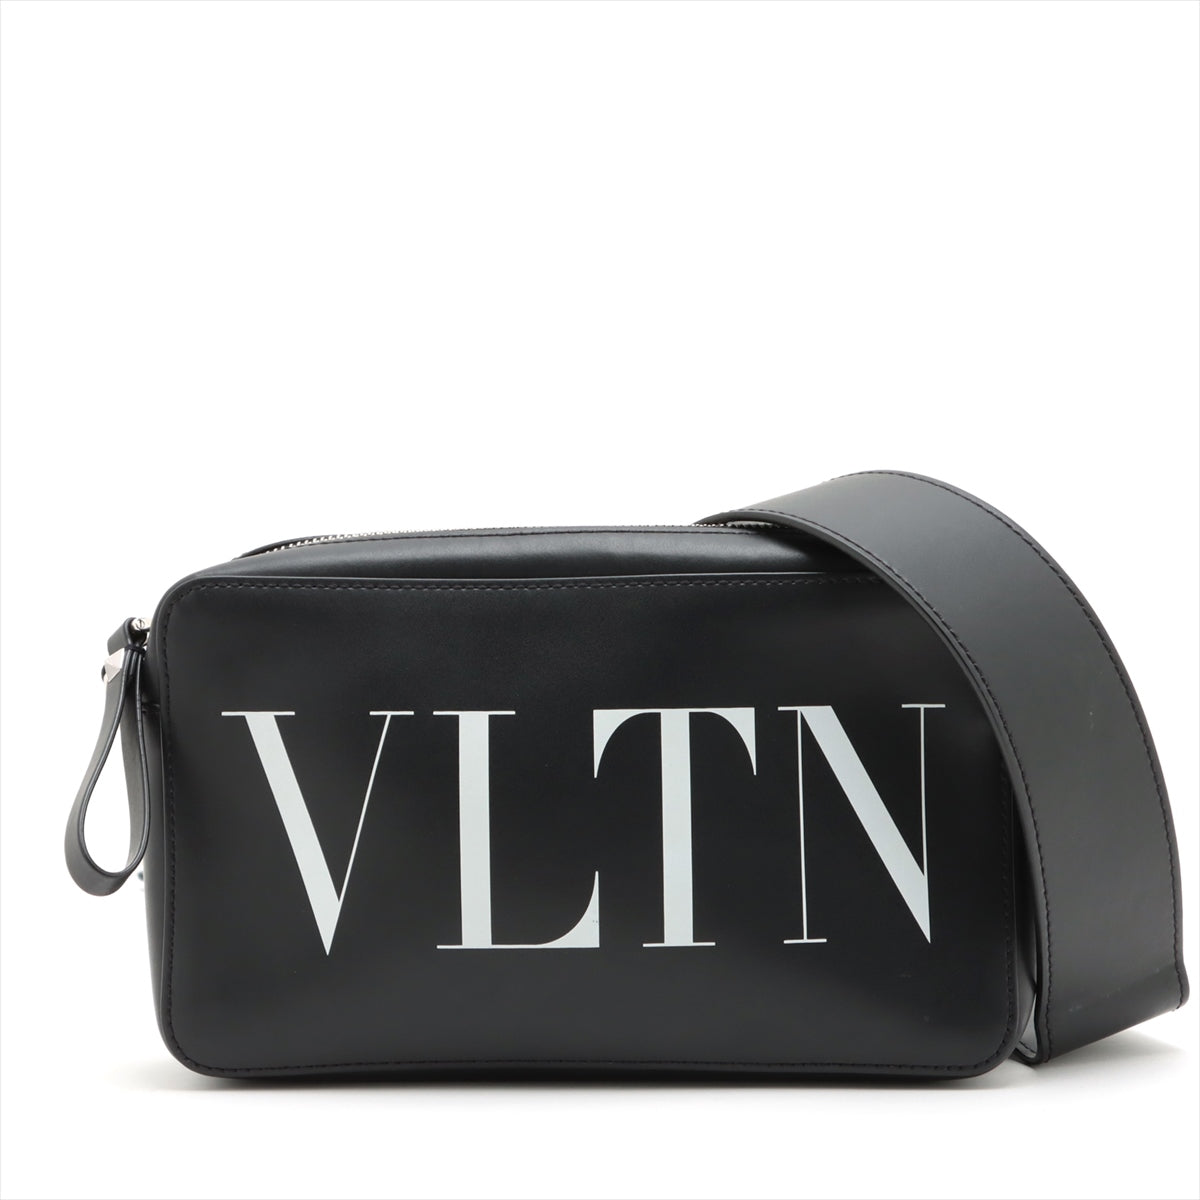 ヴァレンティノ VLTN レザー ショルダーバッグ ブラック